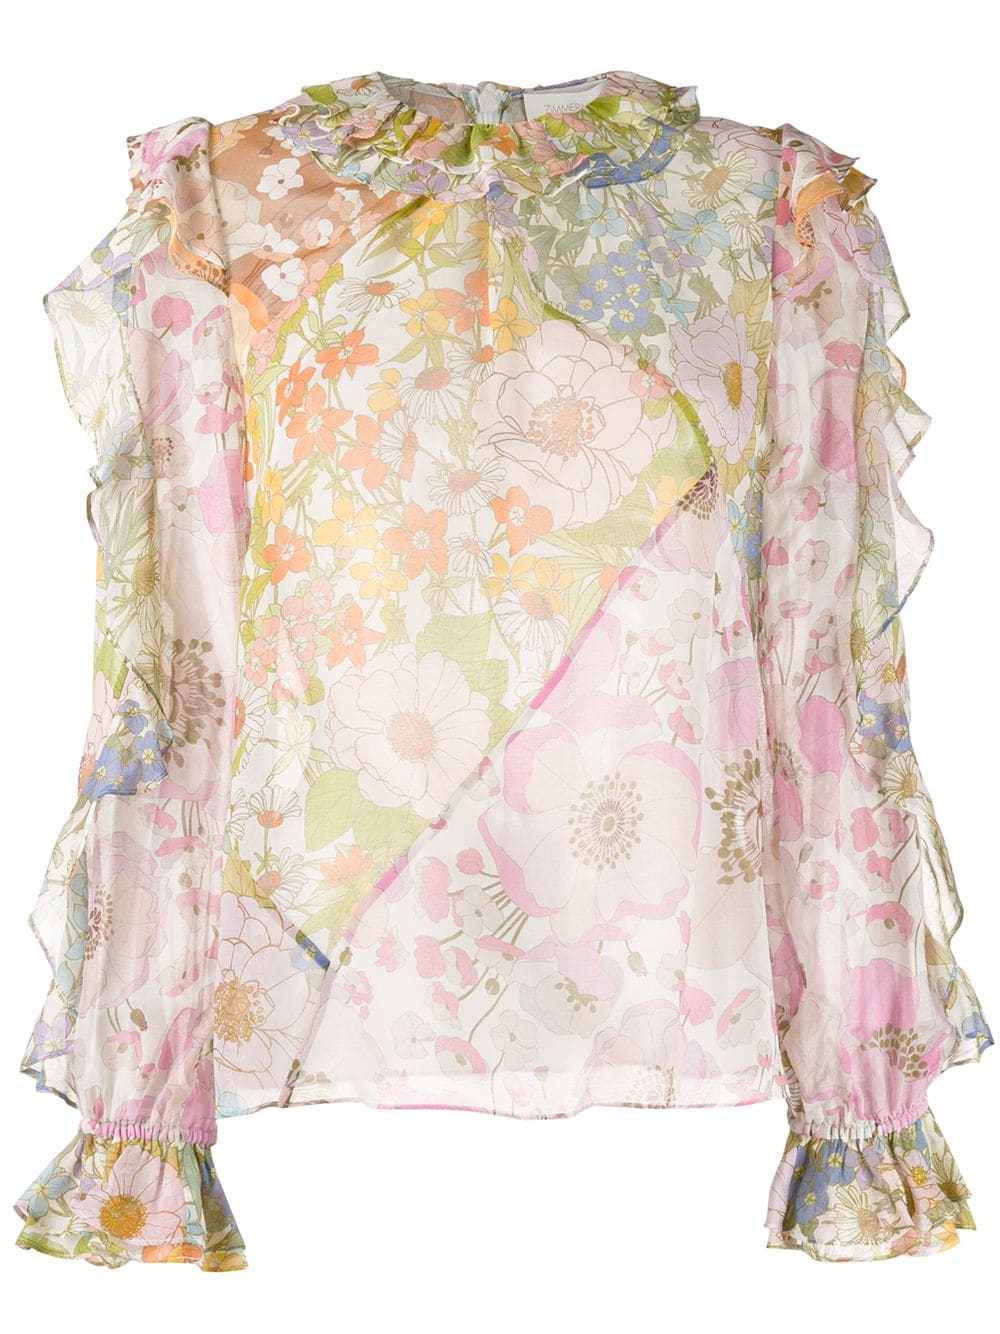 фото Zimmermann полупрозрачная блузка с цветочным принтом